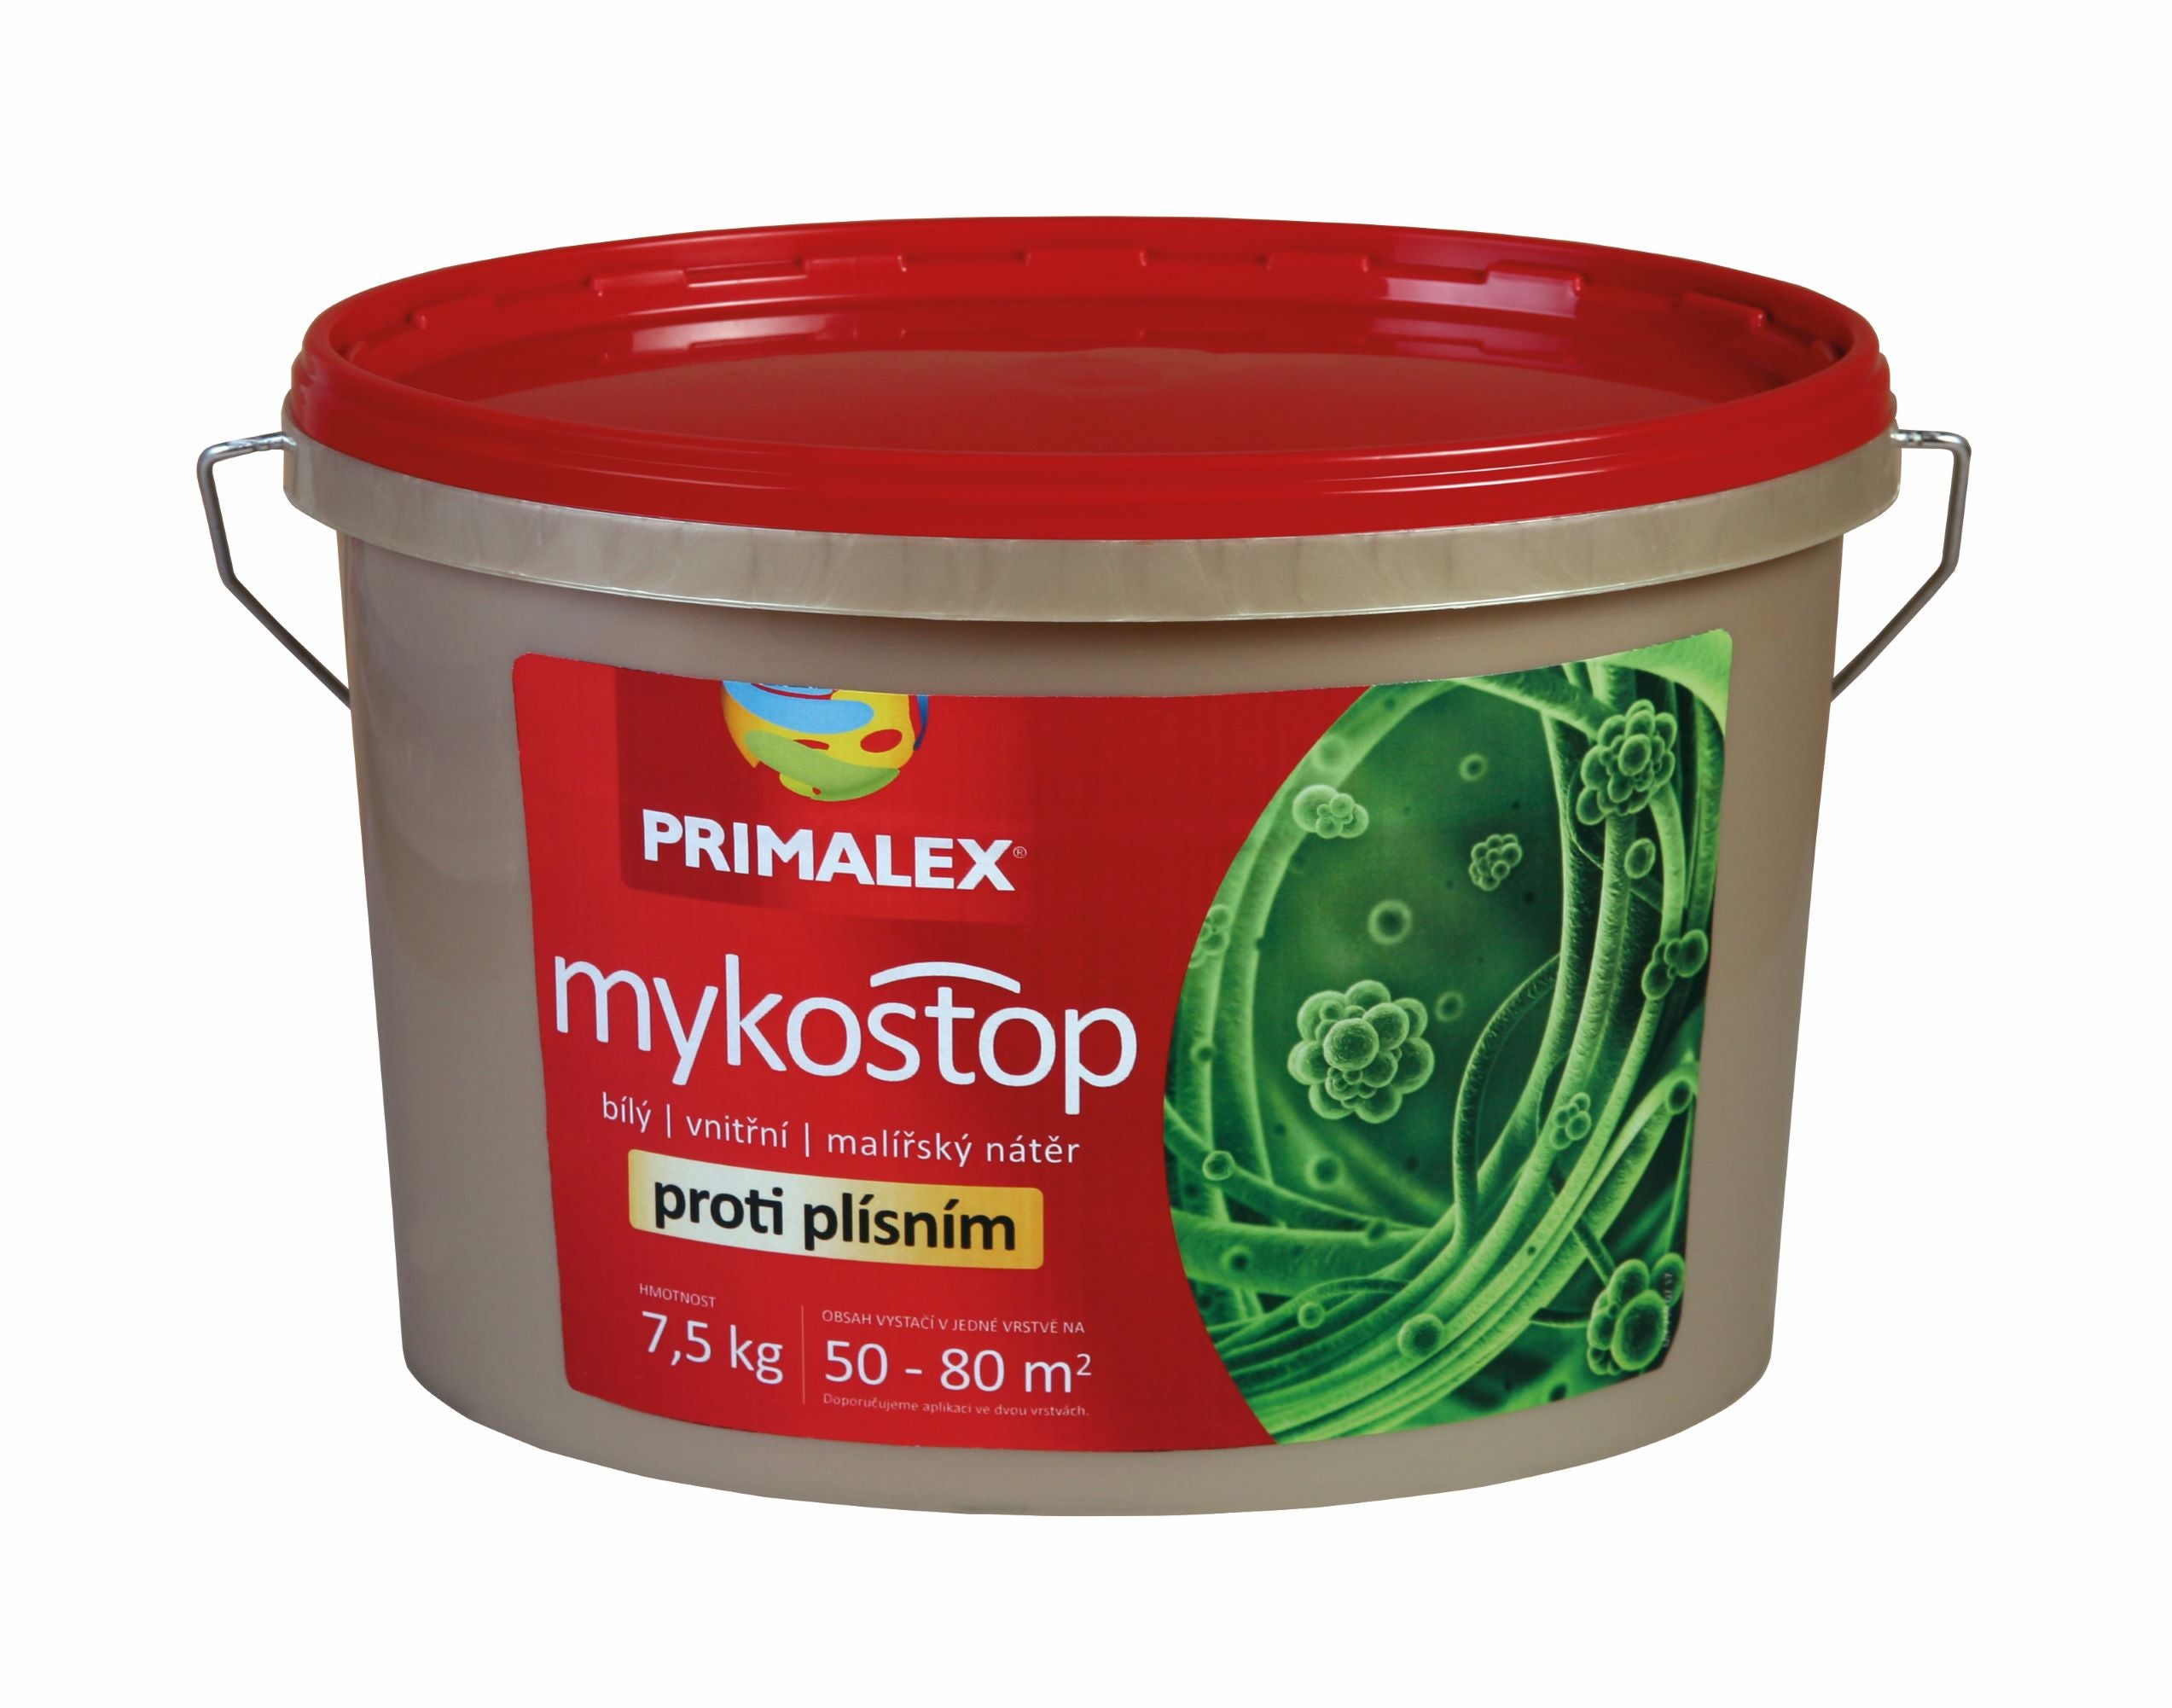 PRIMALEX mykostop bílý vnitřní malířský nátěr proti plísním